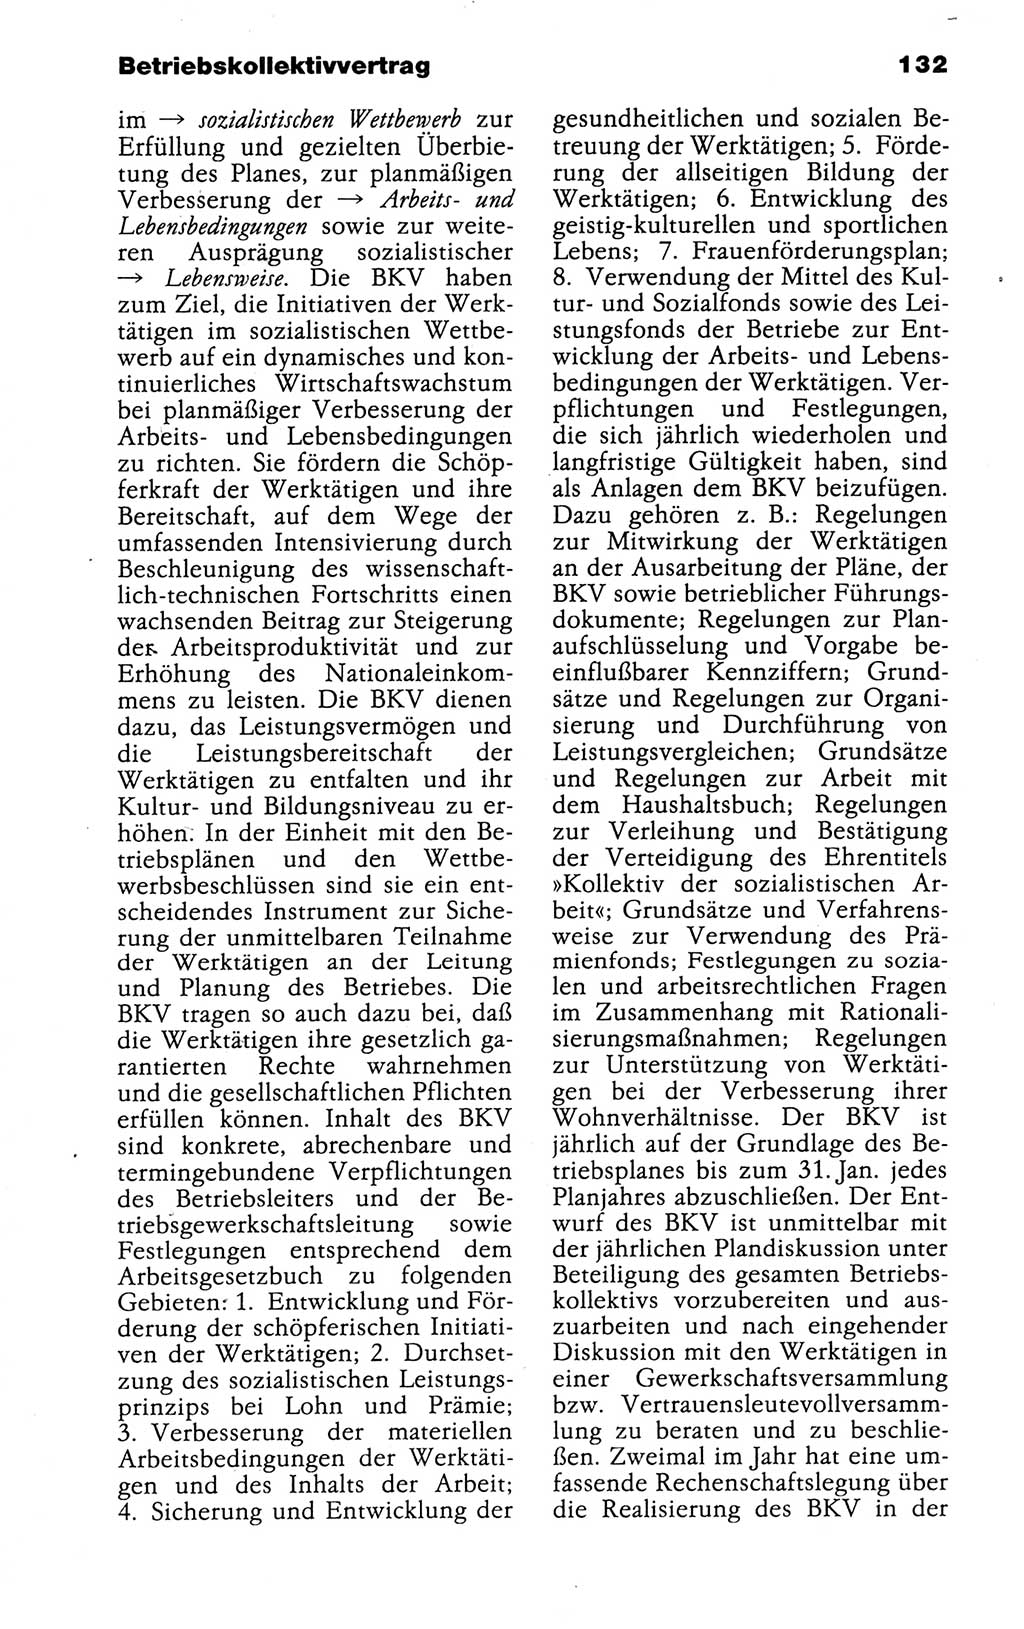 Kleines politisches Wörterbuch [Deutsche Demokratische Republik (DDR)] 1988, Seite 132 (Kl. pol. Wb. DDR 1988, S. 132)